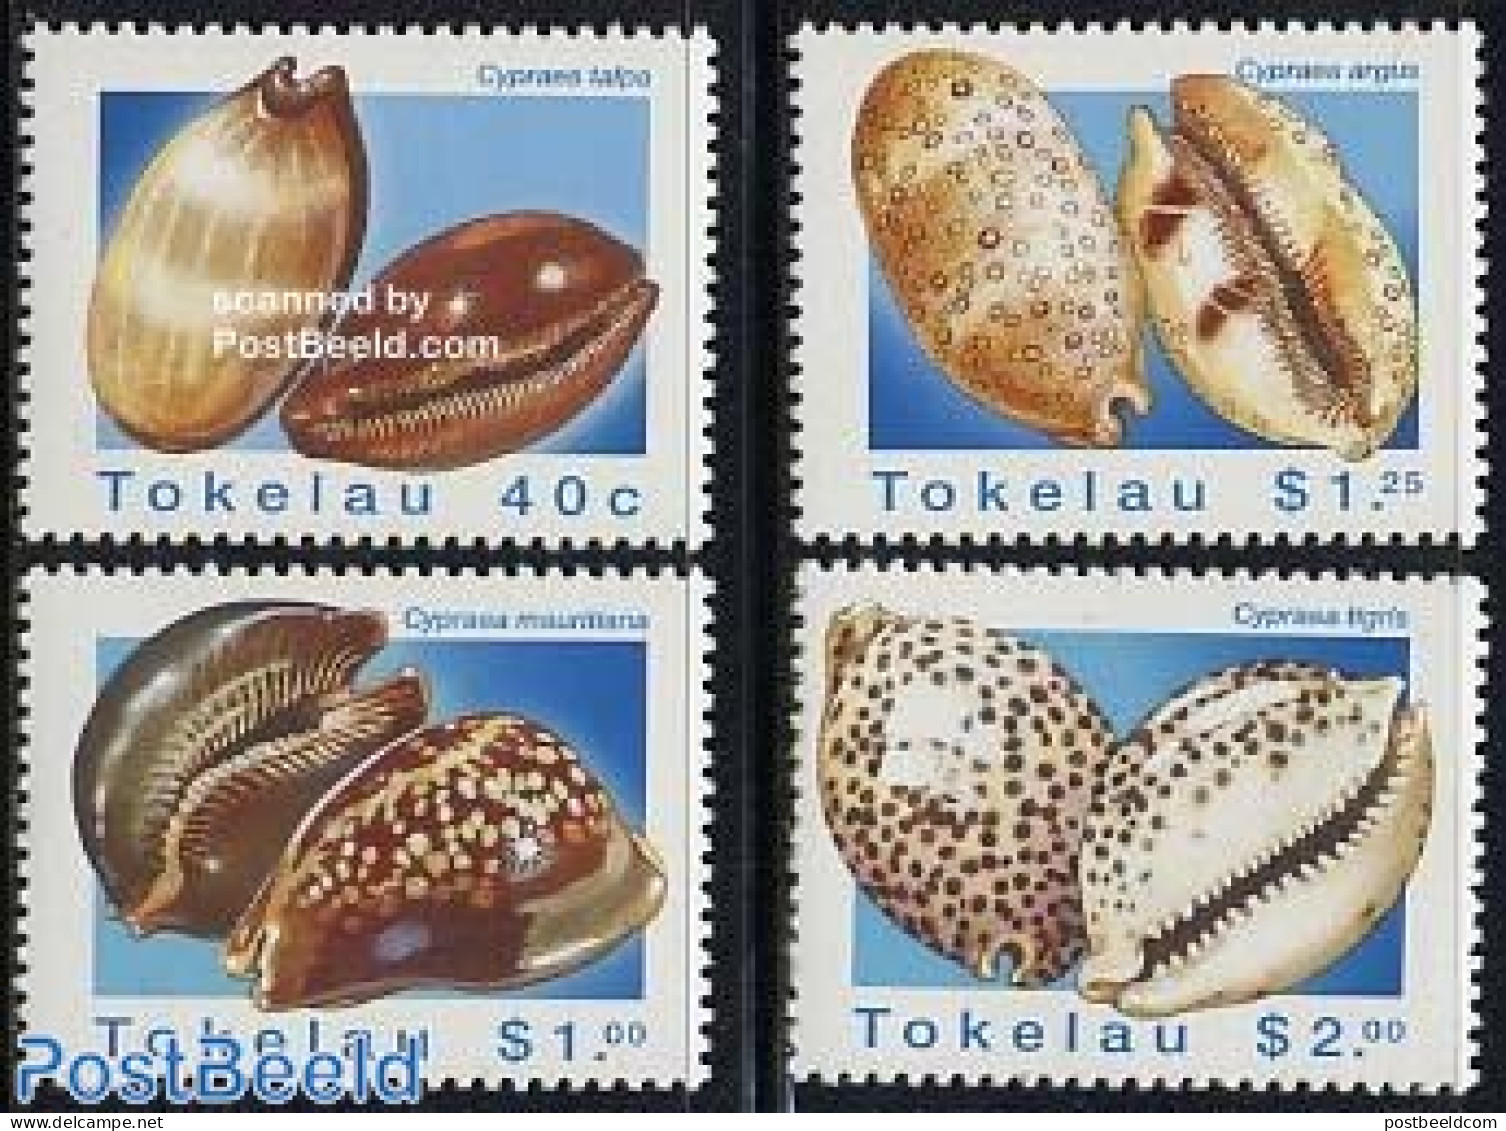 Tokelau Islands 1996 Shells 4v, Mint NH, Nature - Shells & Crustaceans - Maritiem Leven